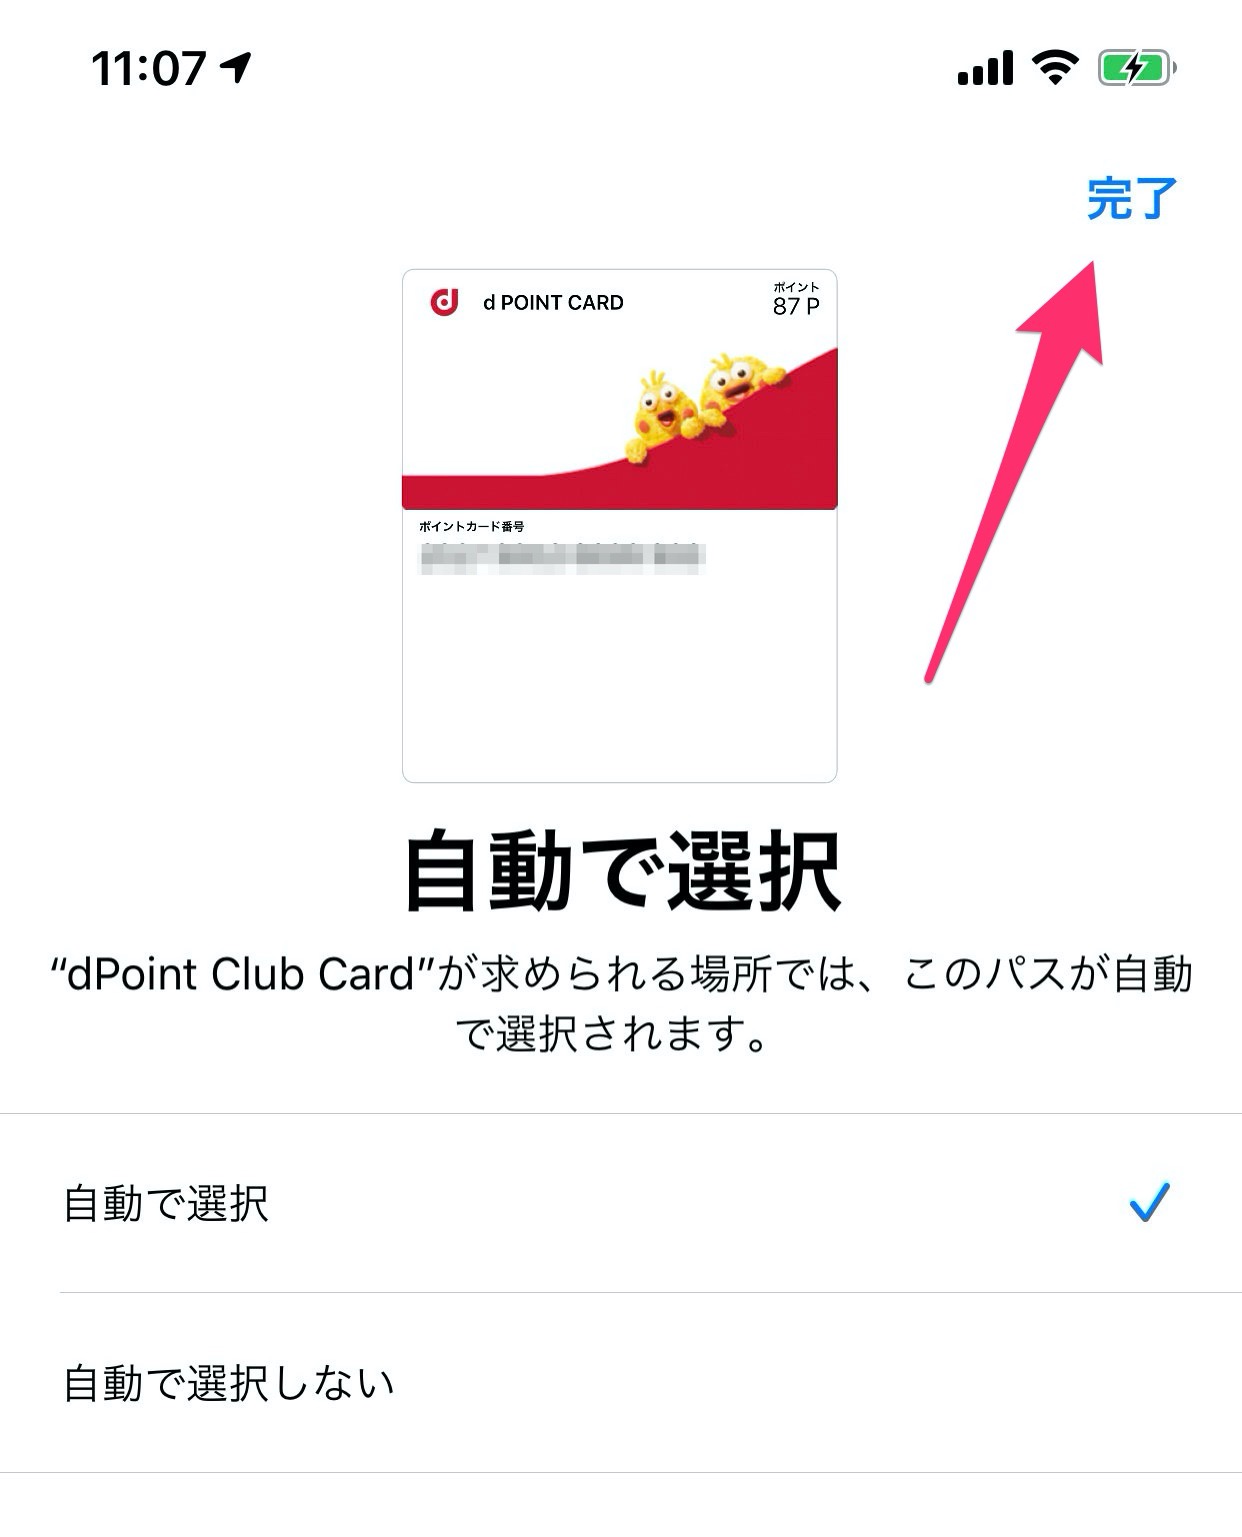 「dポイントカード」Appleウォレットアプリに登録する方法